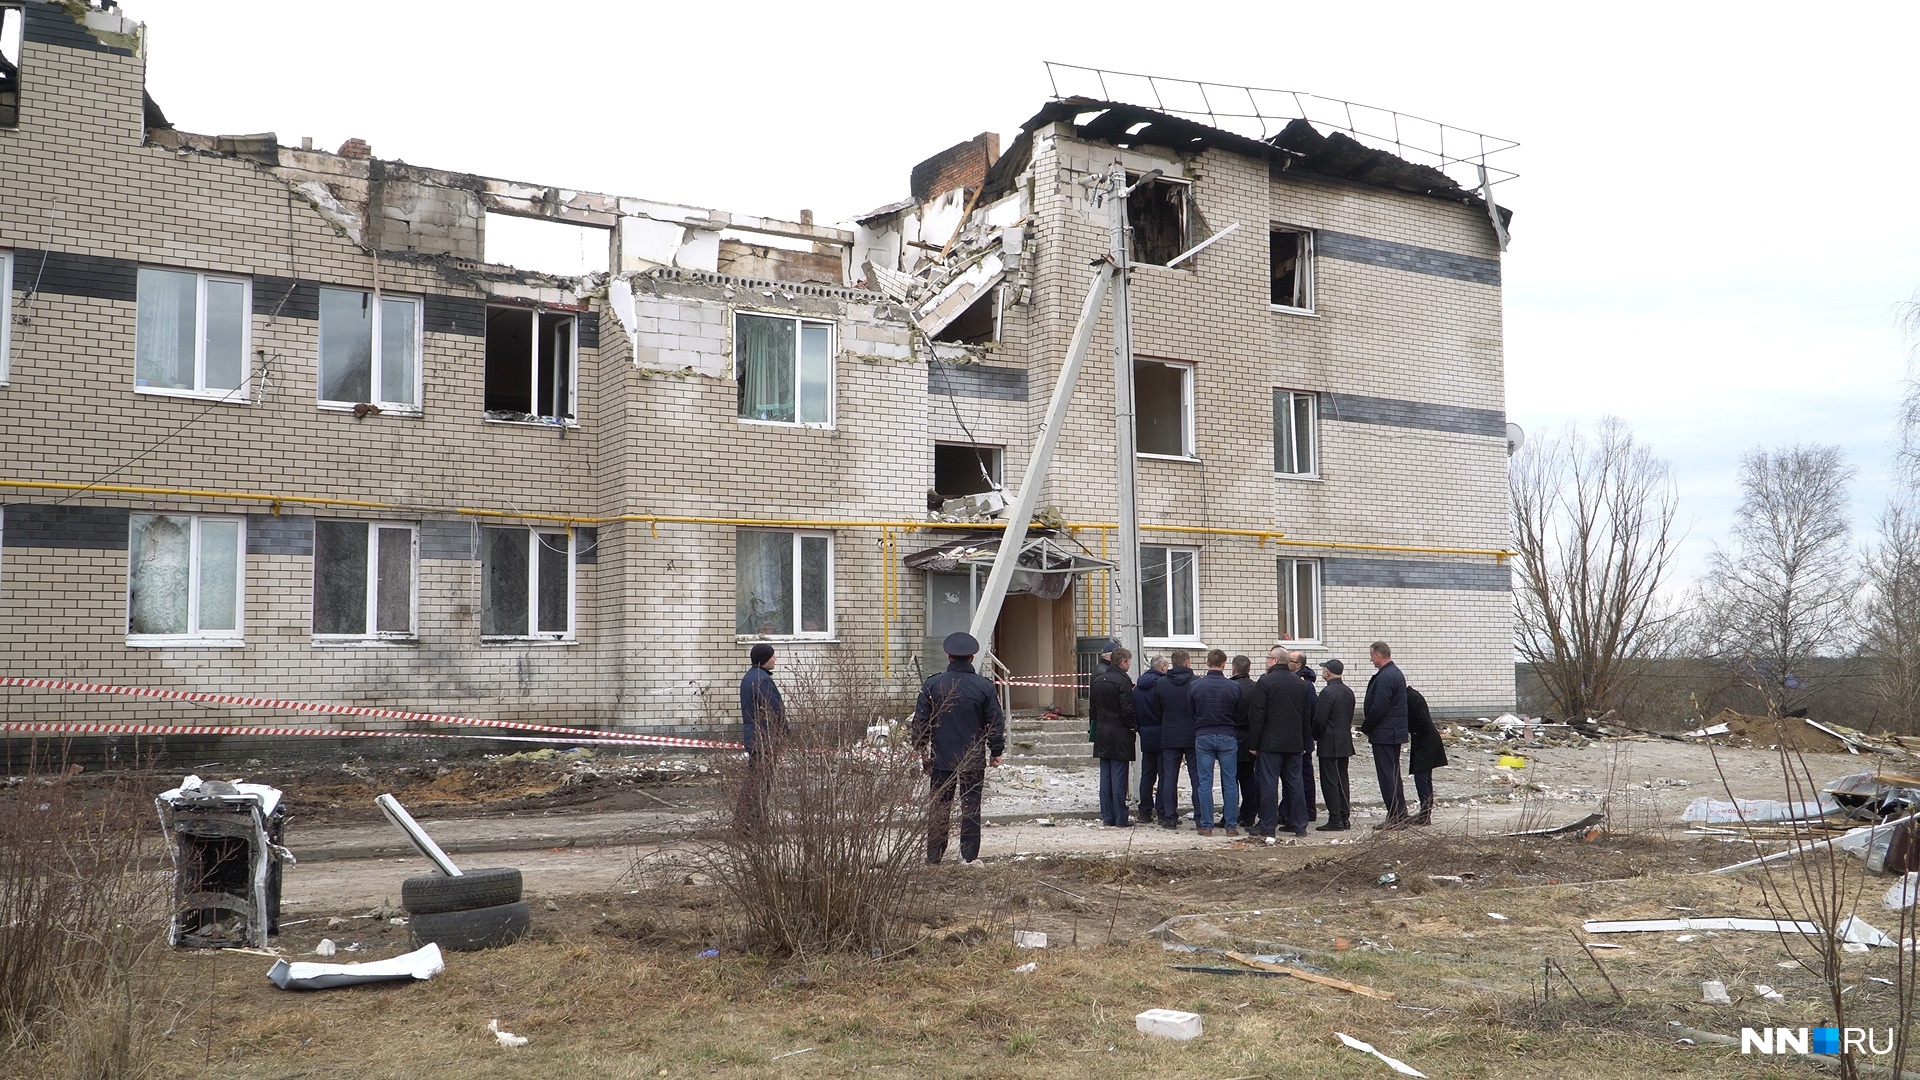 Накануне взрыва жильцы вызывали сотрудников газовой службы